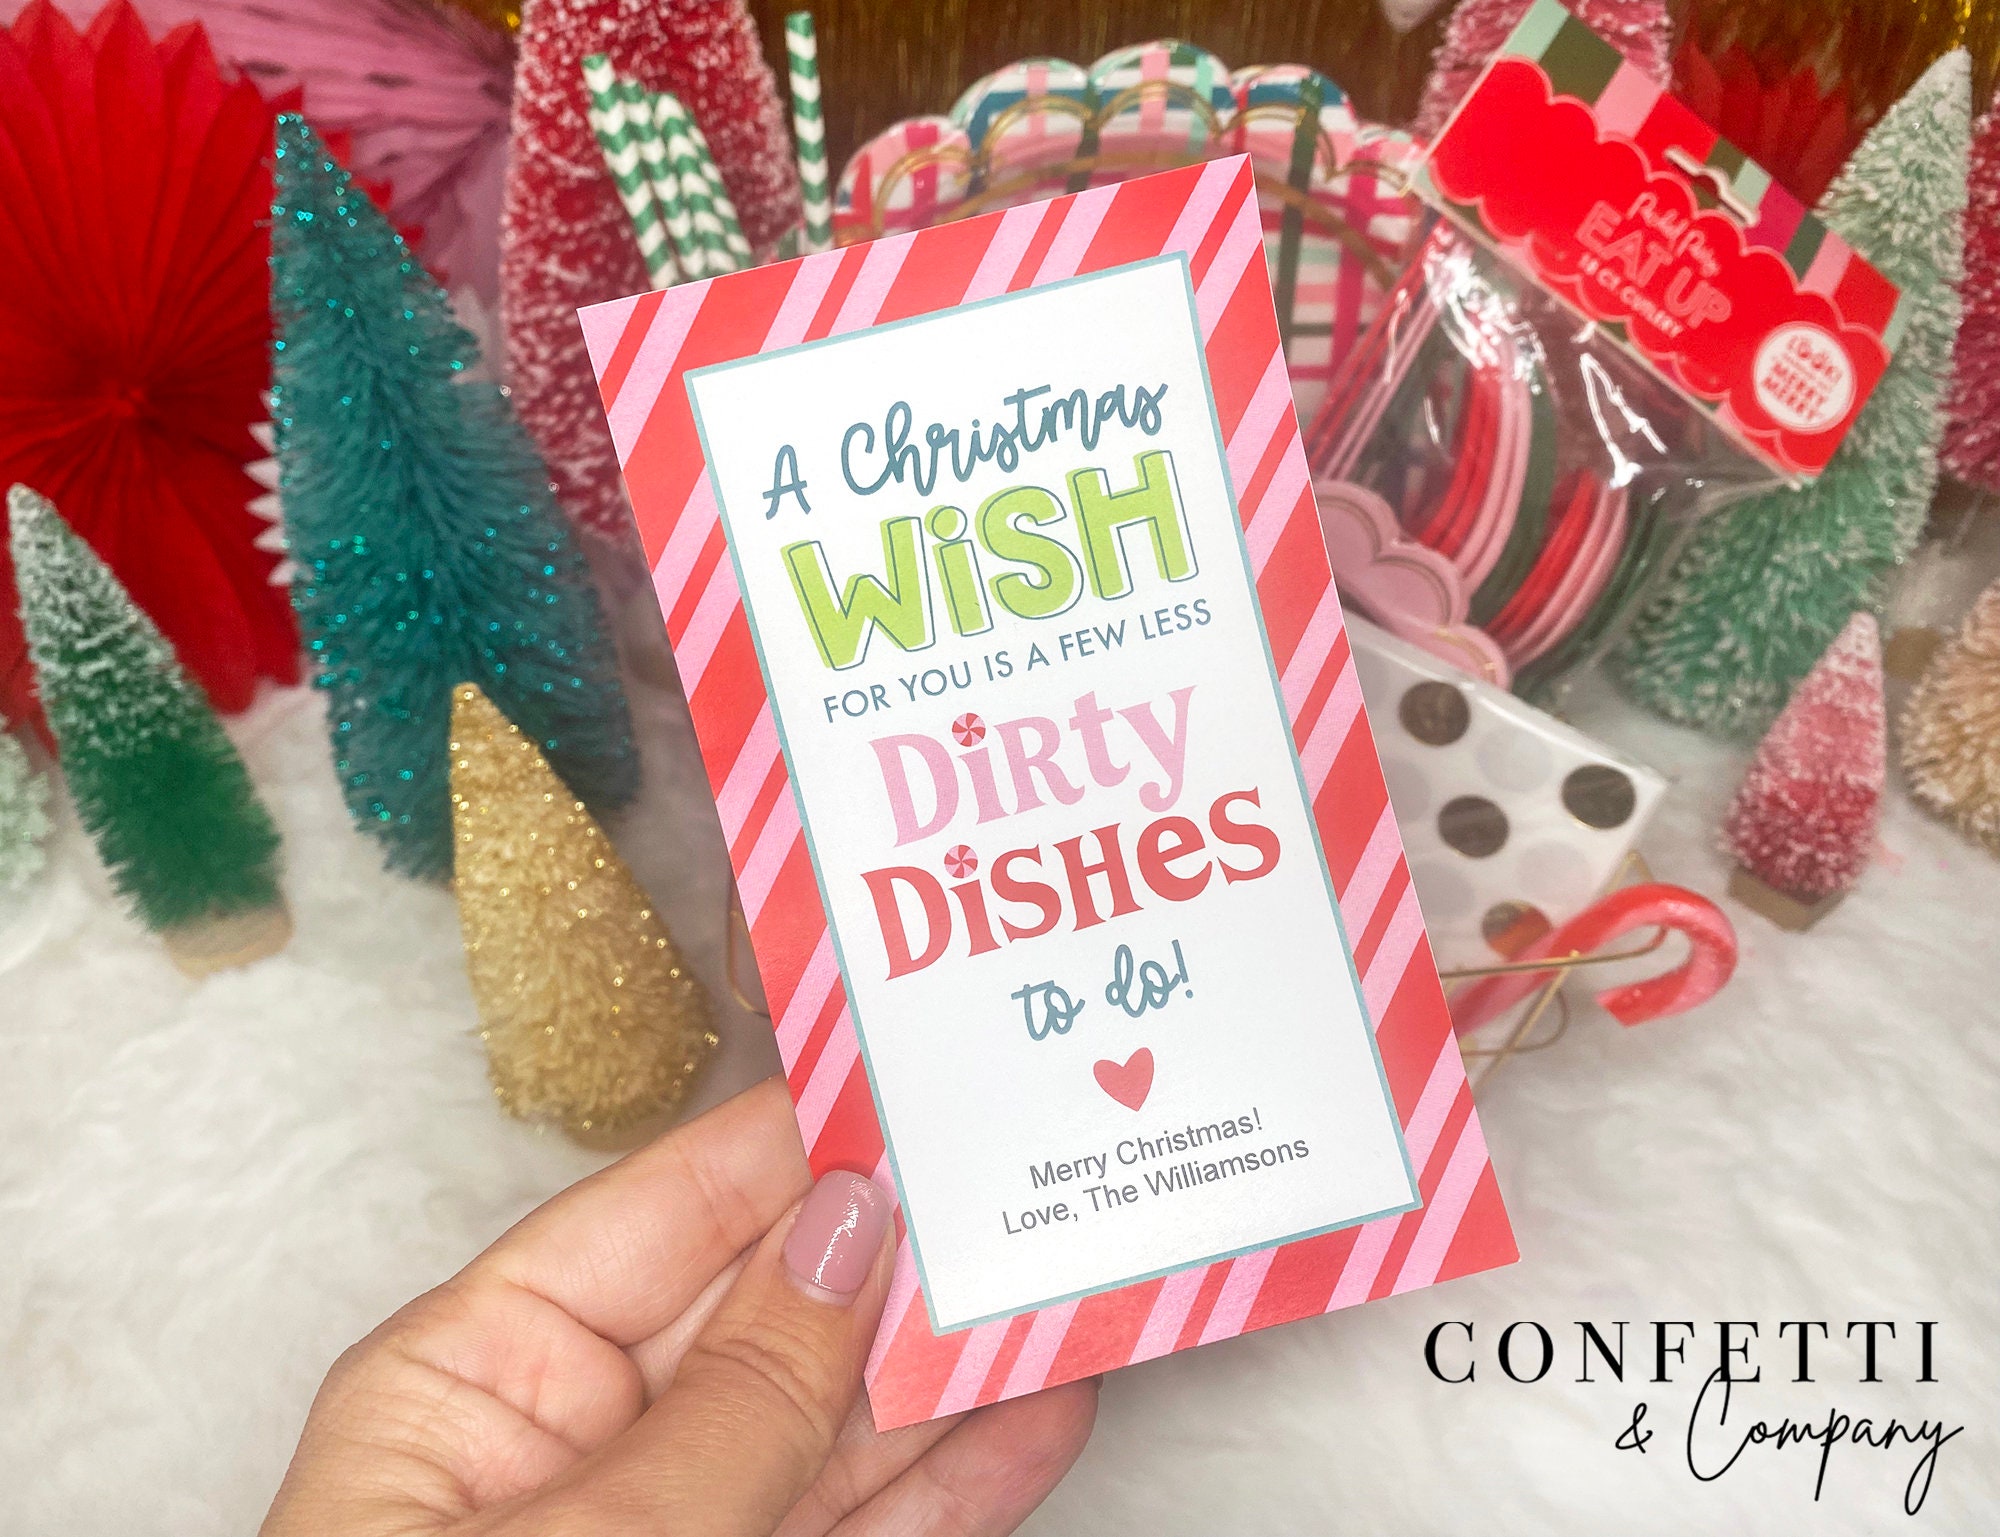 Christmas 2019 Neighbor Gifts — The Diva Dish